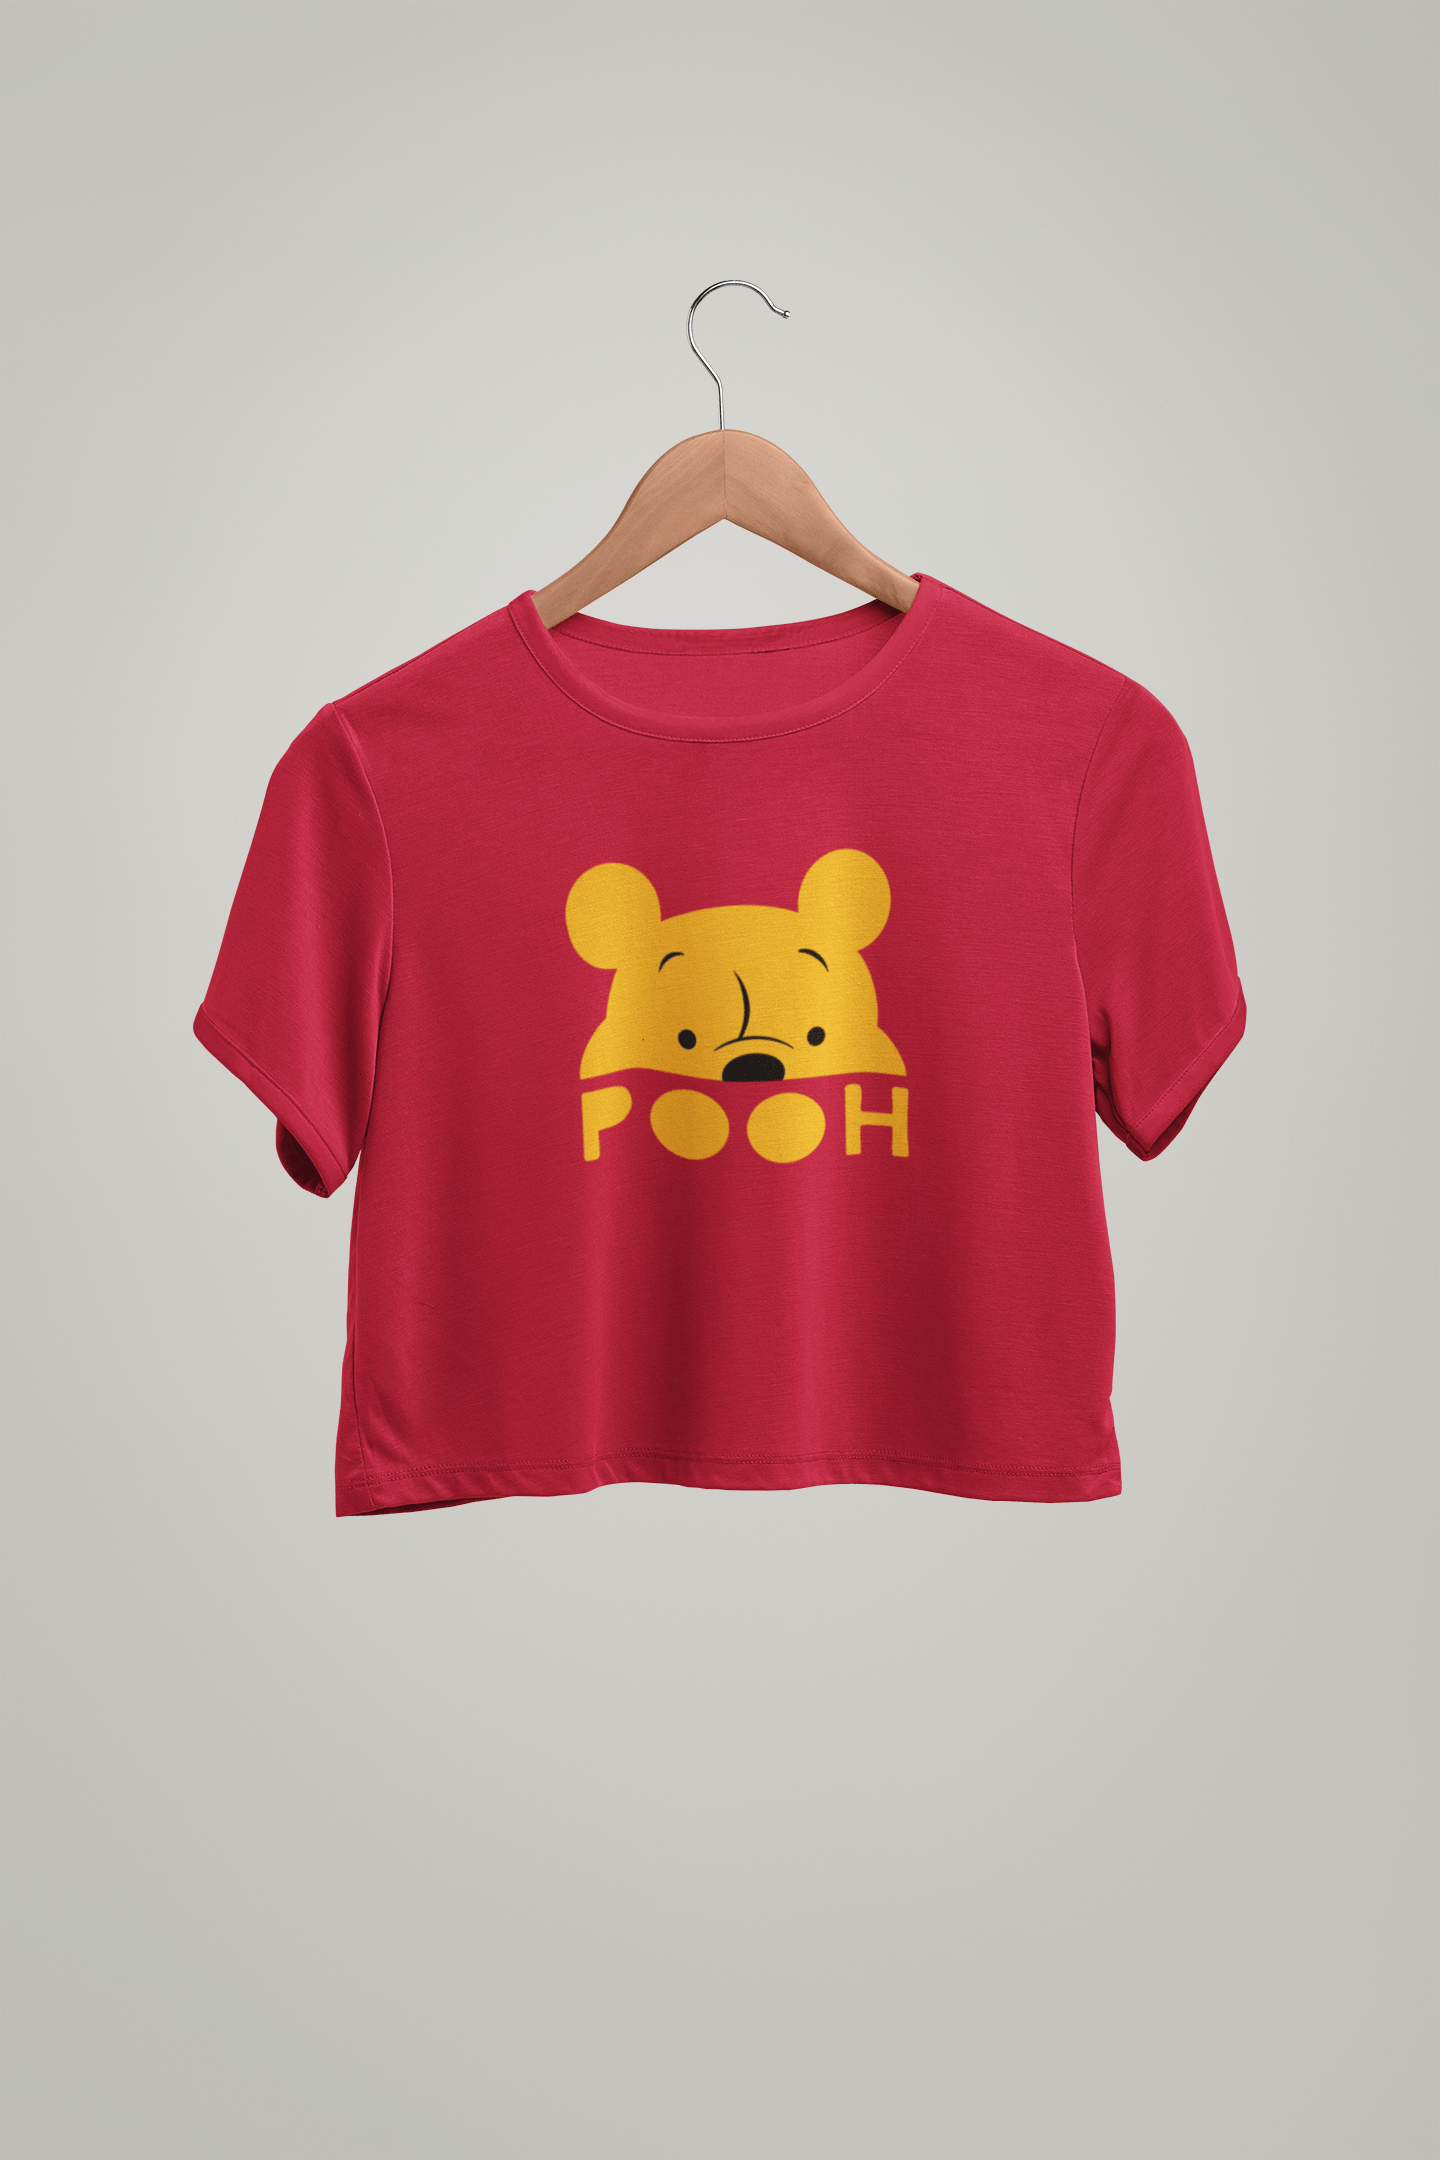 POOH : Winnie the Pooh & Pals -HALF-SLEEVE CROP TOPS RED